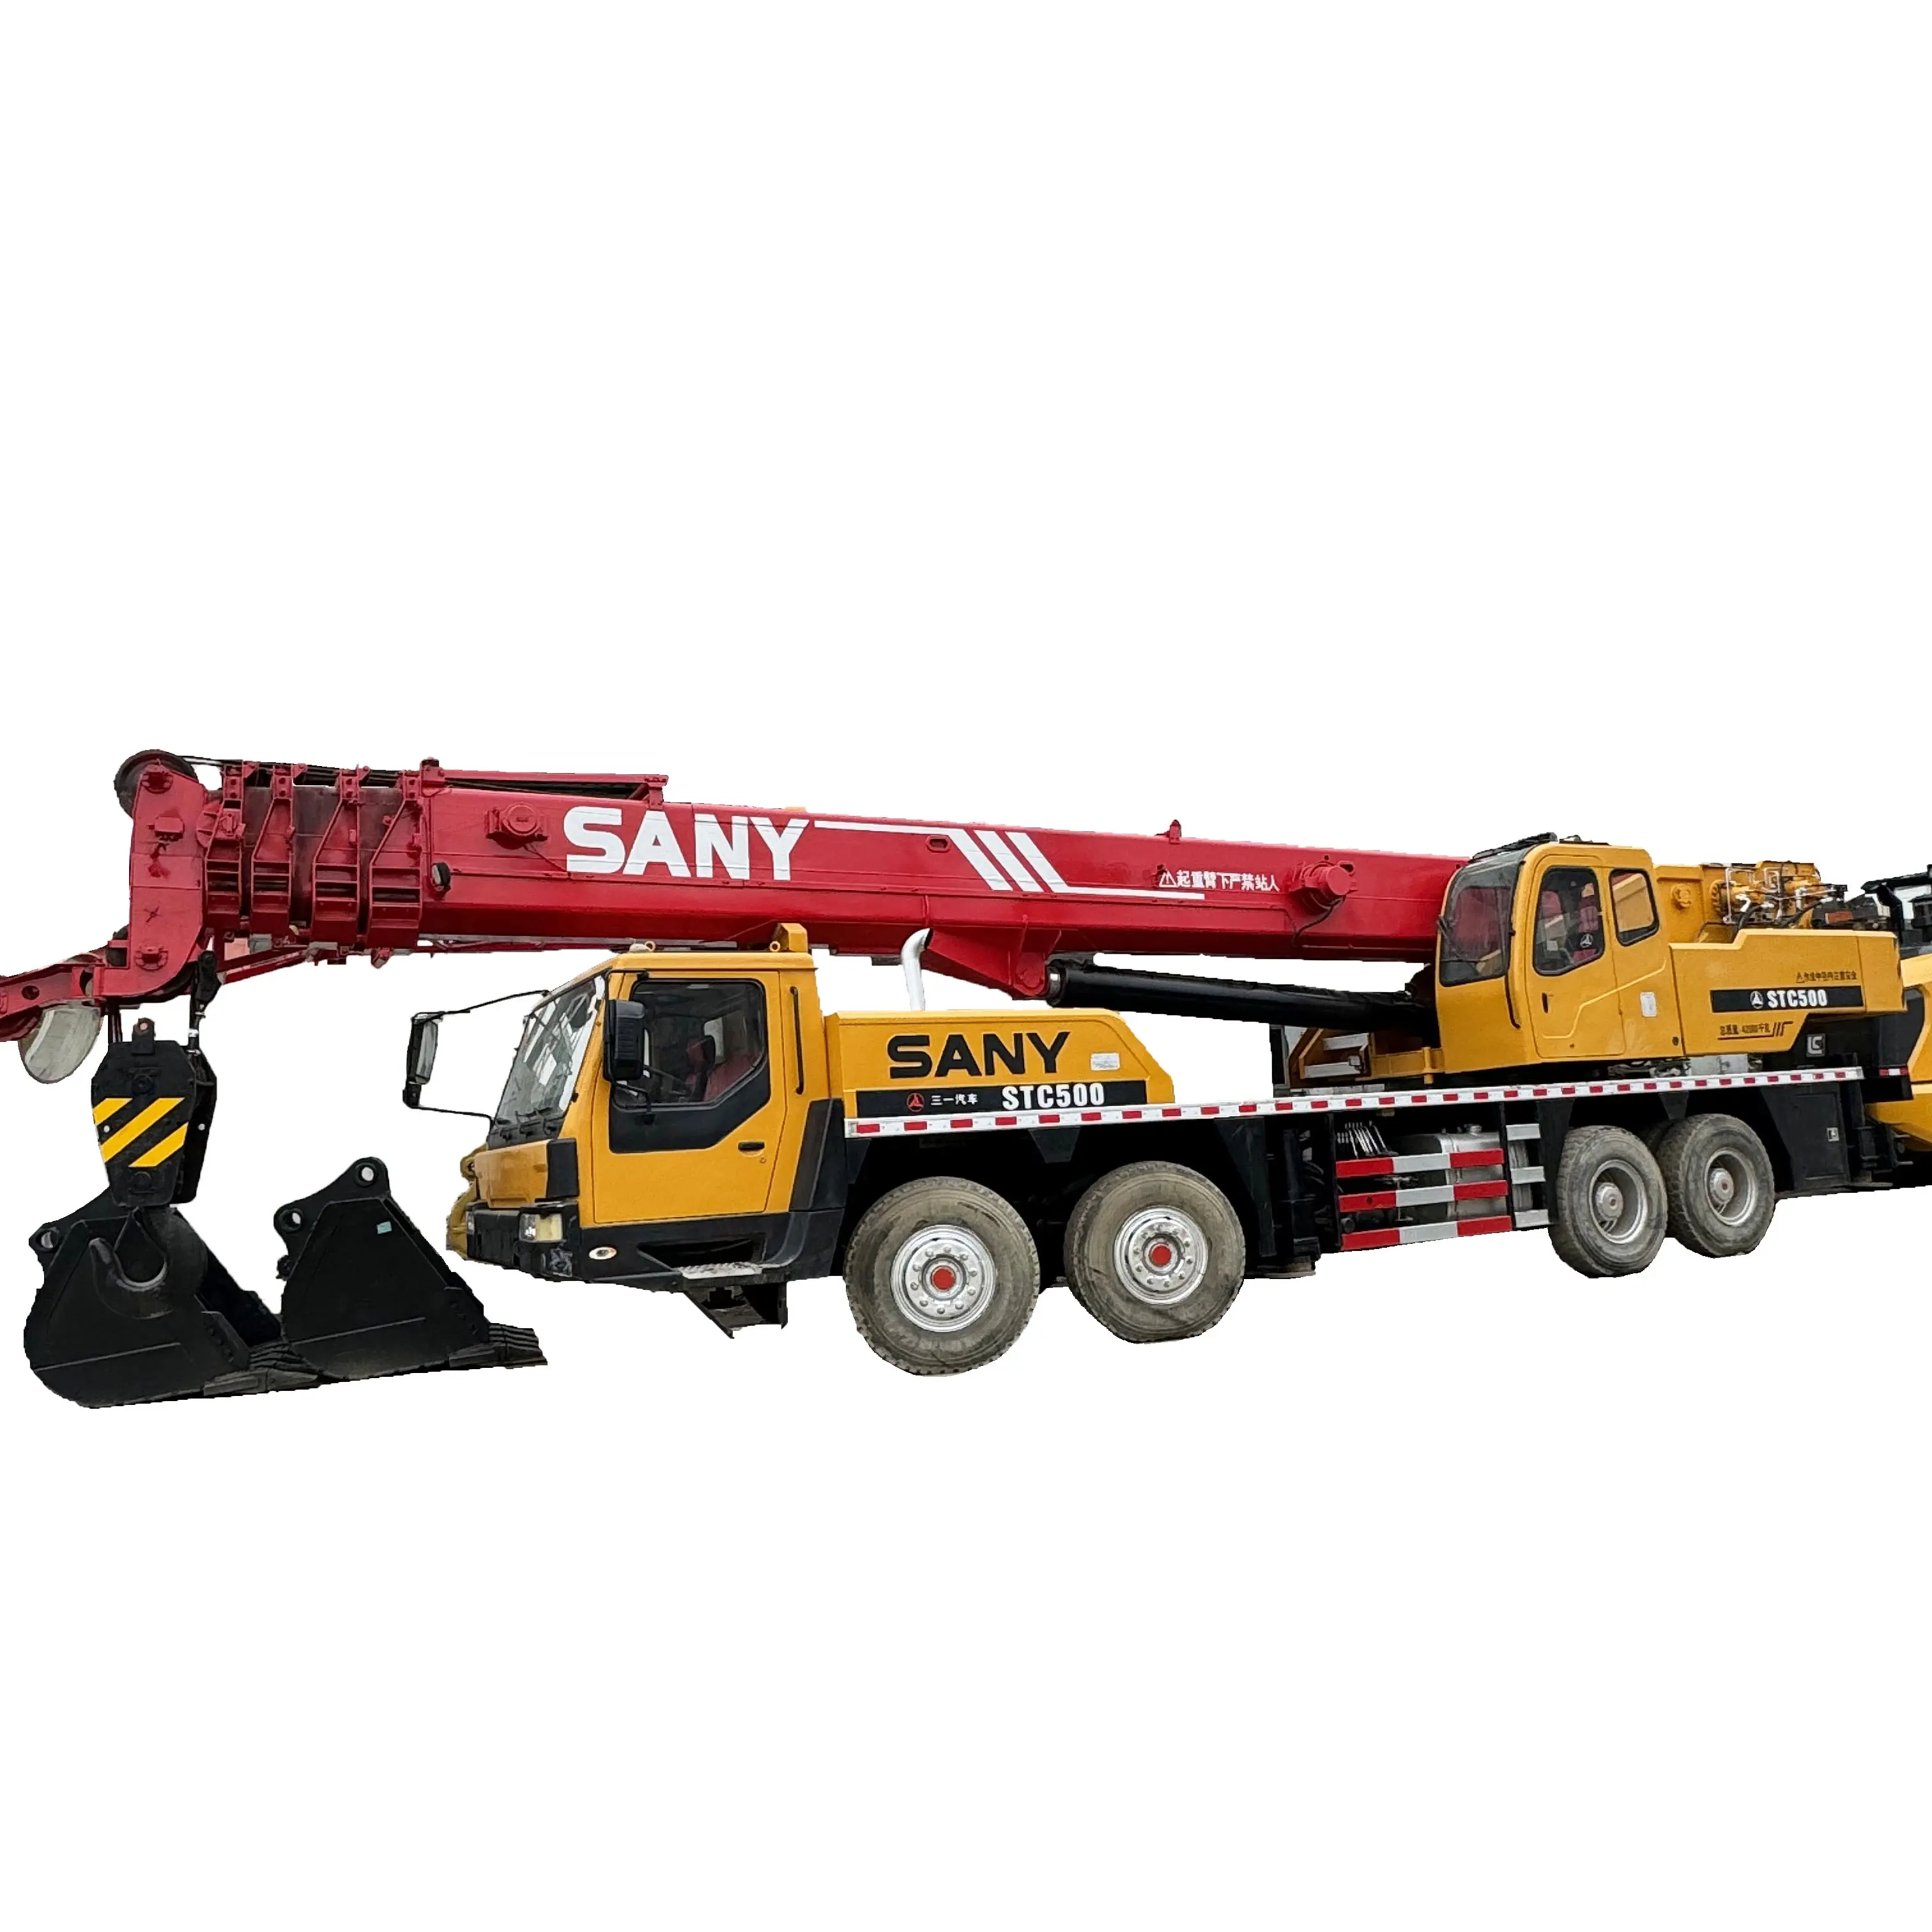 50 Ton Gebruikte Vrachtwagenkraan Sany Stc500 Tweedehands Hydraulische Mobiele Kraan Goedkope Prijs Gebruikte Vrachtwagenkraan